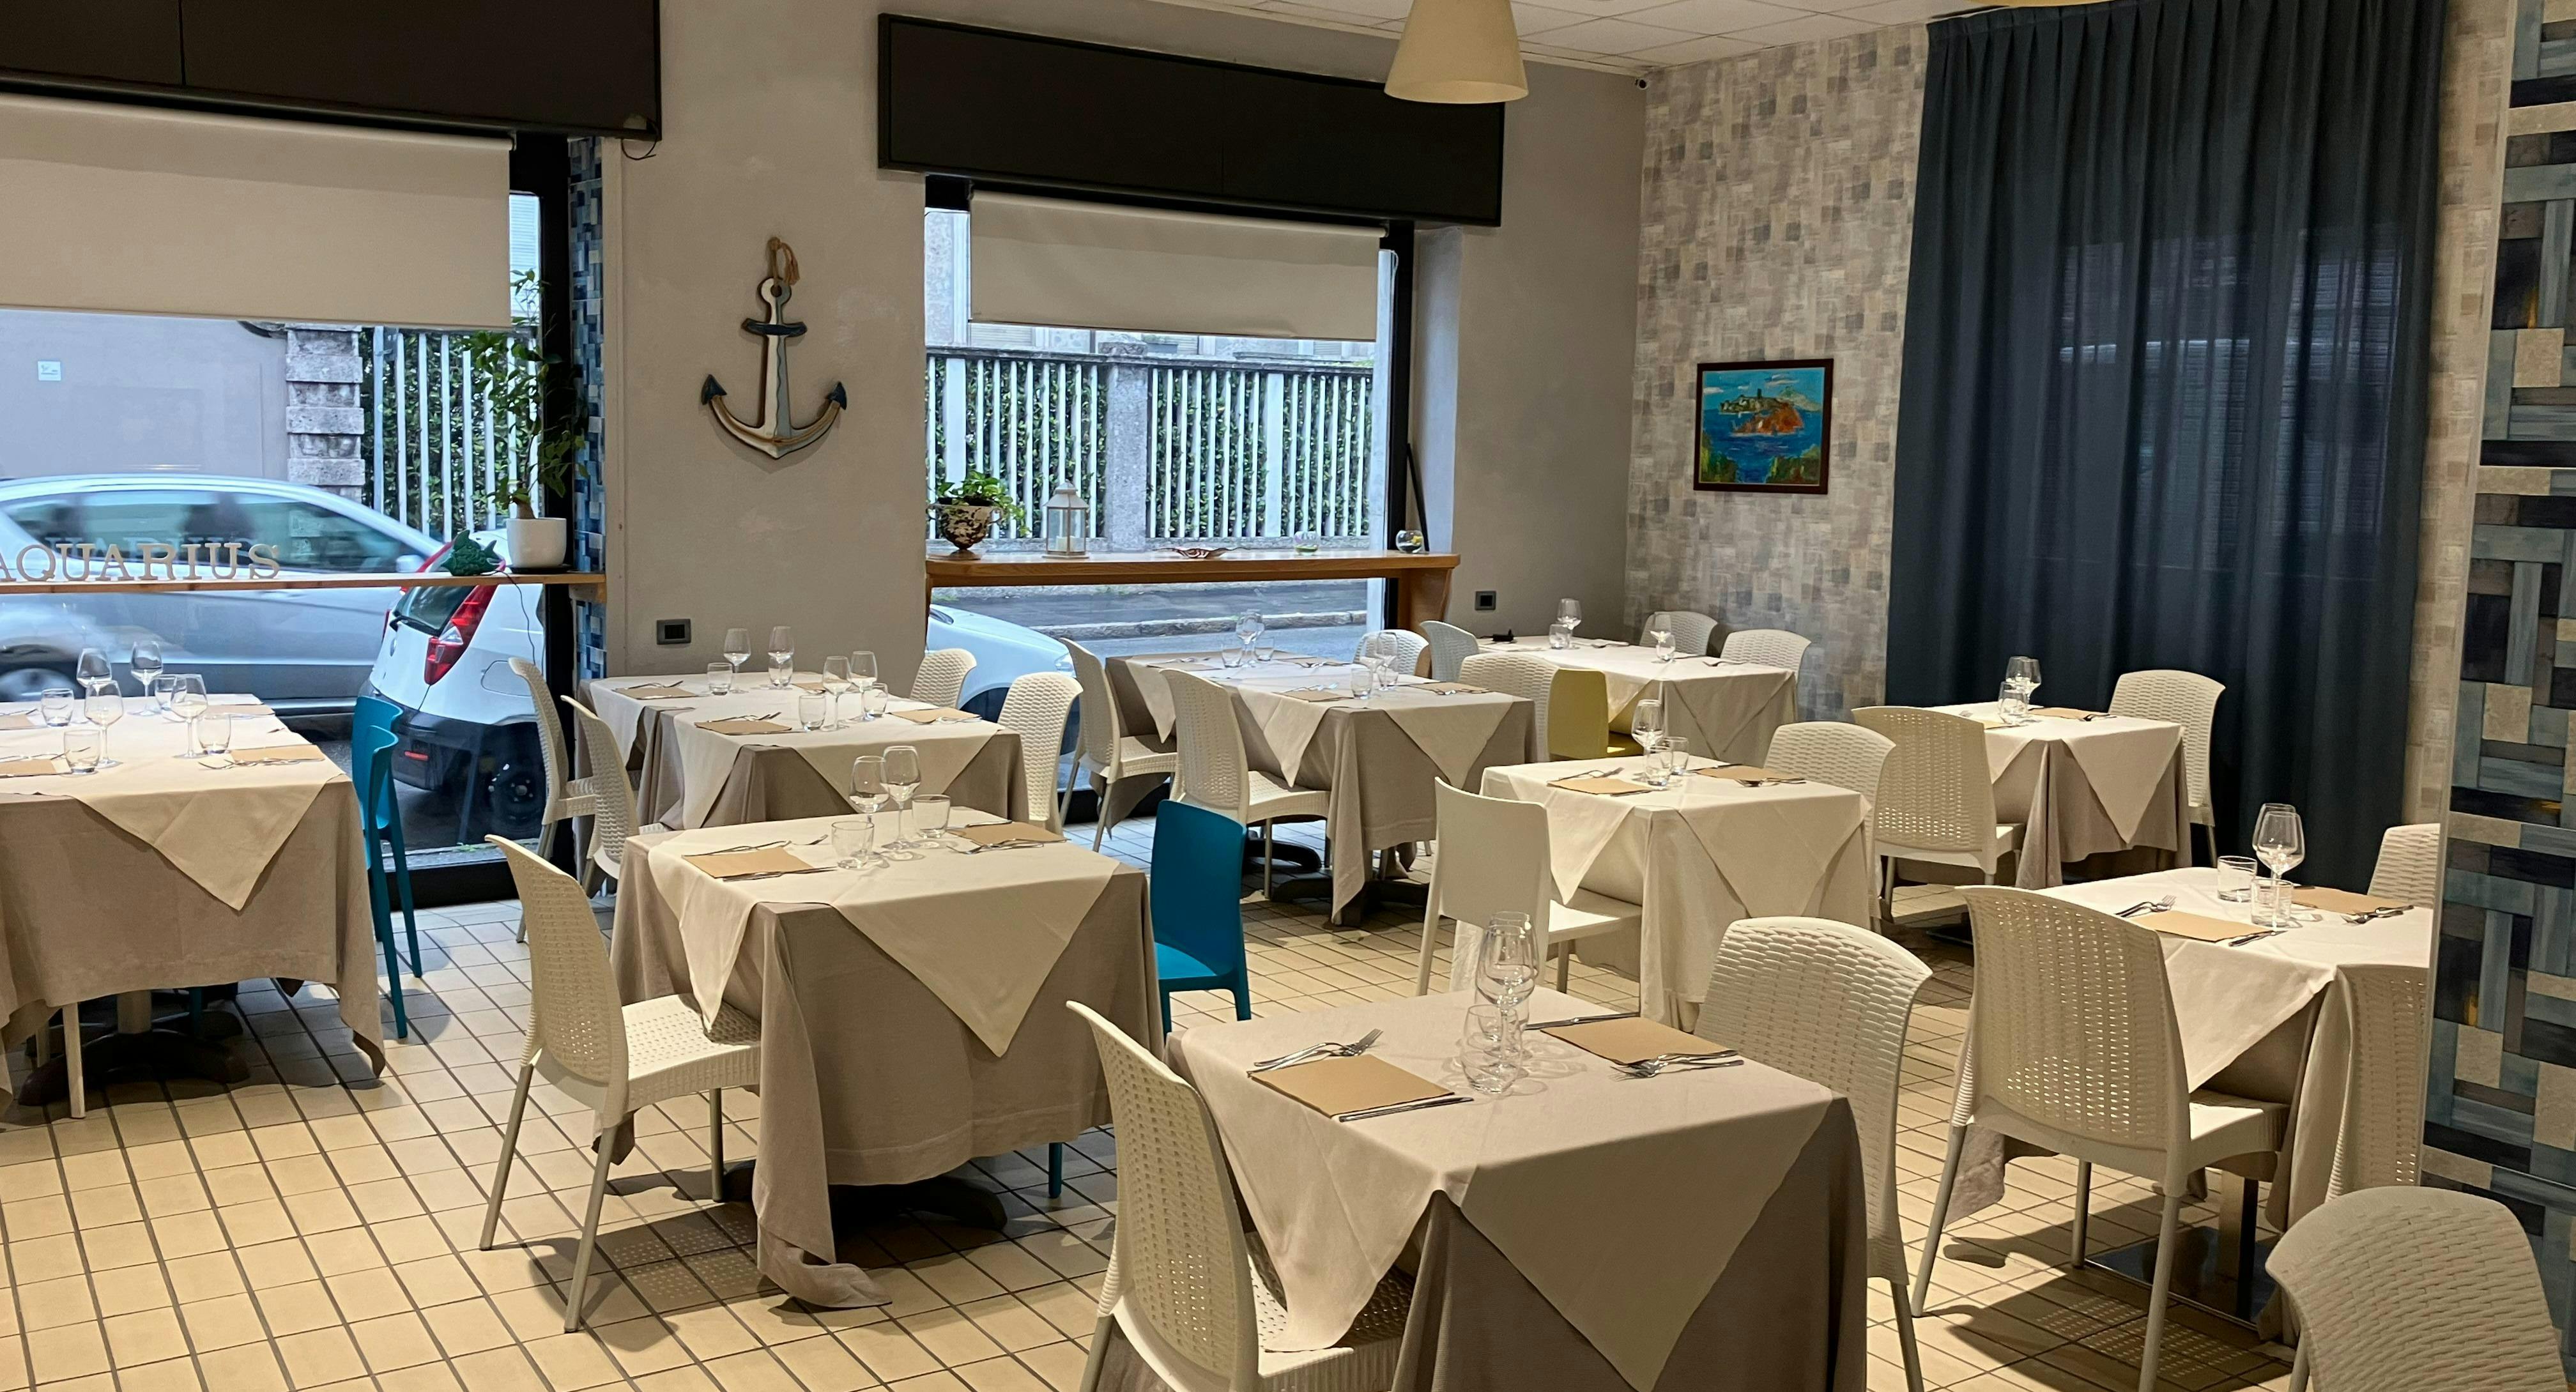 Photo of restaurant Ristorante Aquarius in Monza, Monza and Brianza